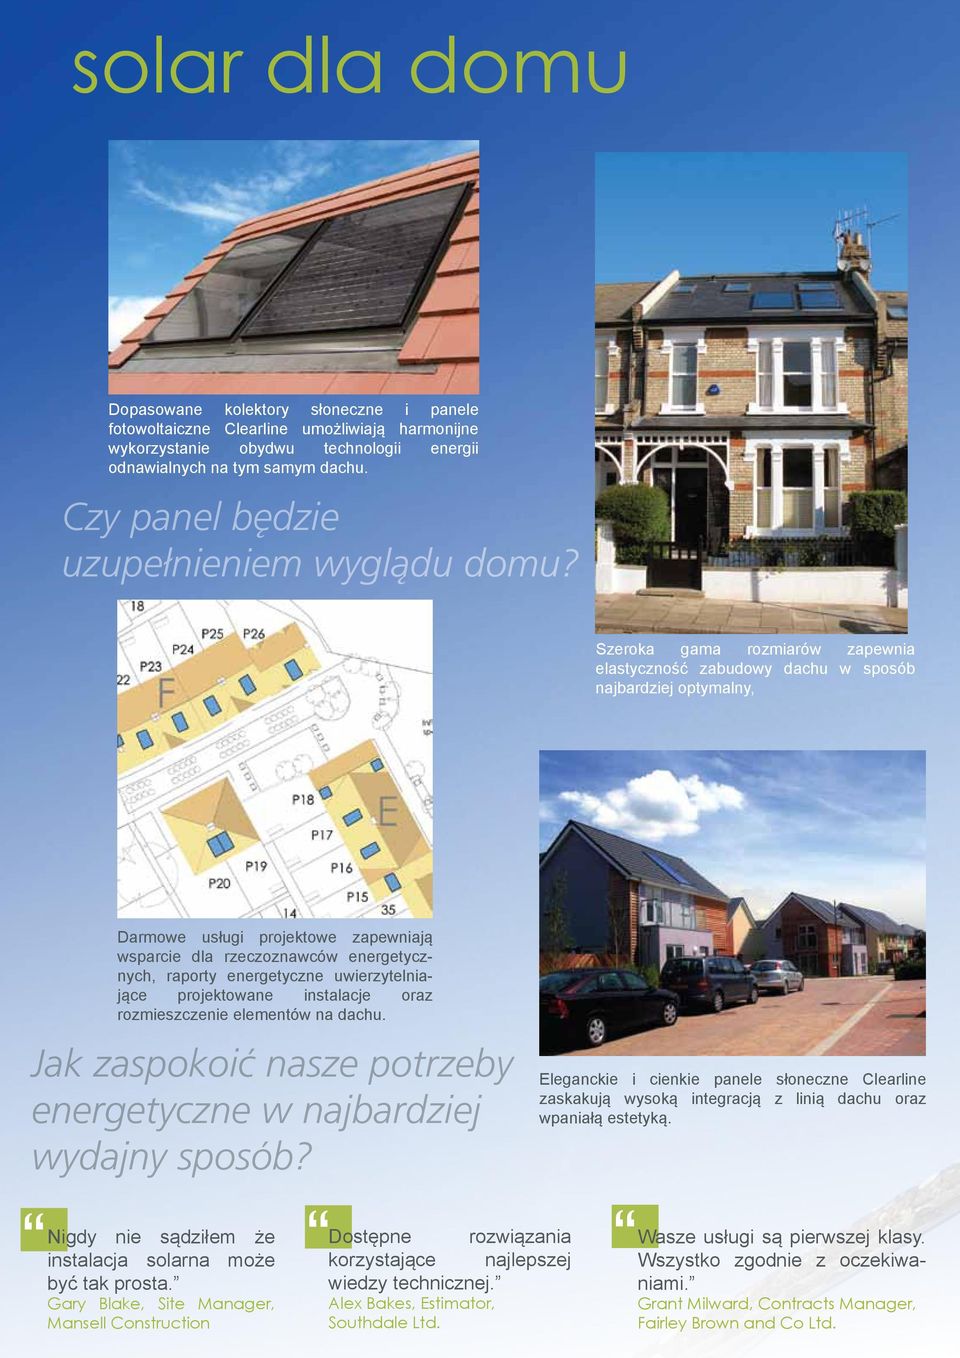 Szeroka gama rozmiarów zapewnia elastyczność zabudowy dachu w sposób najbardziej optymalny, Darmowe usługi projektowe zapewniają wsparcie dla rzeczoznawców energetycznych, raporty energetyczne